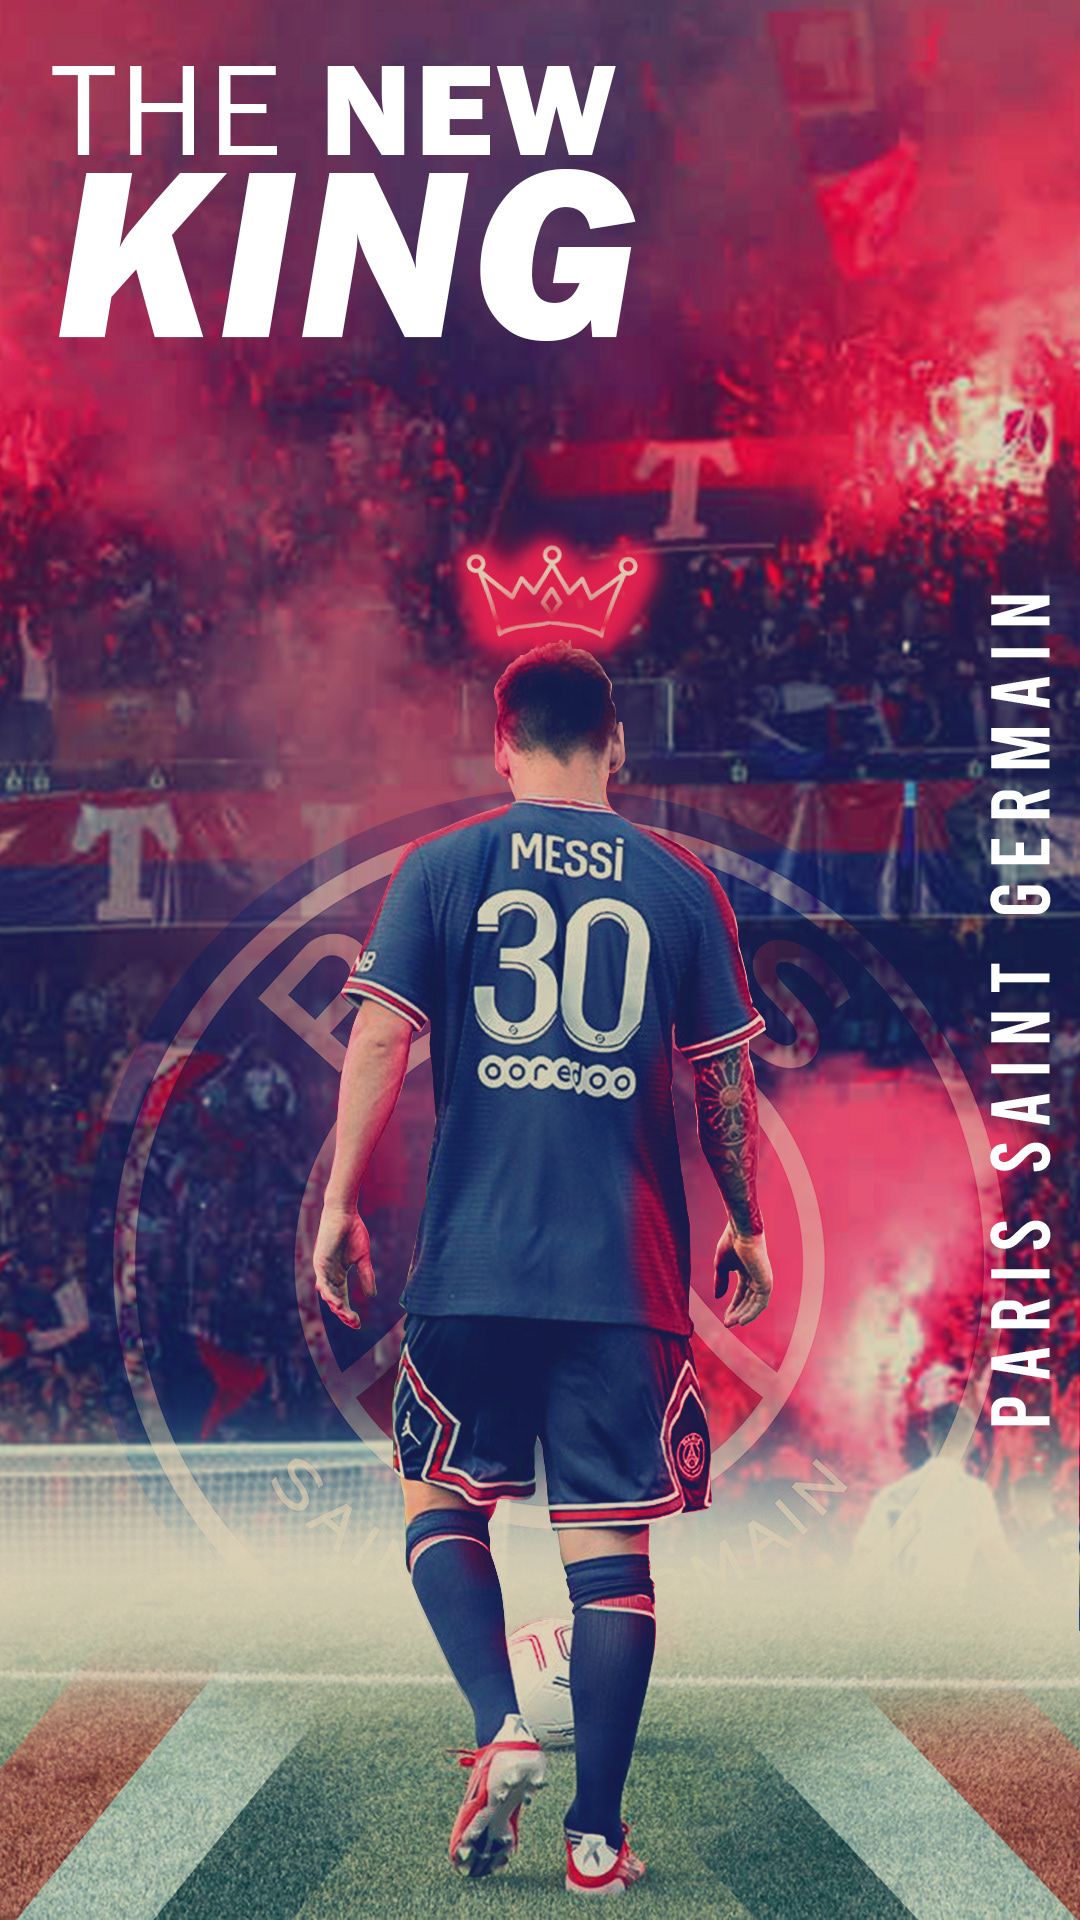 Messi 2022 iPad wallpaper là sự lựa chọn hoàn hảo cho những fan hâm mộ Lionel Messi và bóng đá. Thiết kế tối giản và đậm chất công nghệ sẽ làm màn hình của bạn trở nên đẳng cấp hơn bao giờ hết. Hãy tải về ngay và trang trí cho thiết bị yêu thích của bạn!